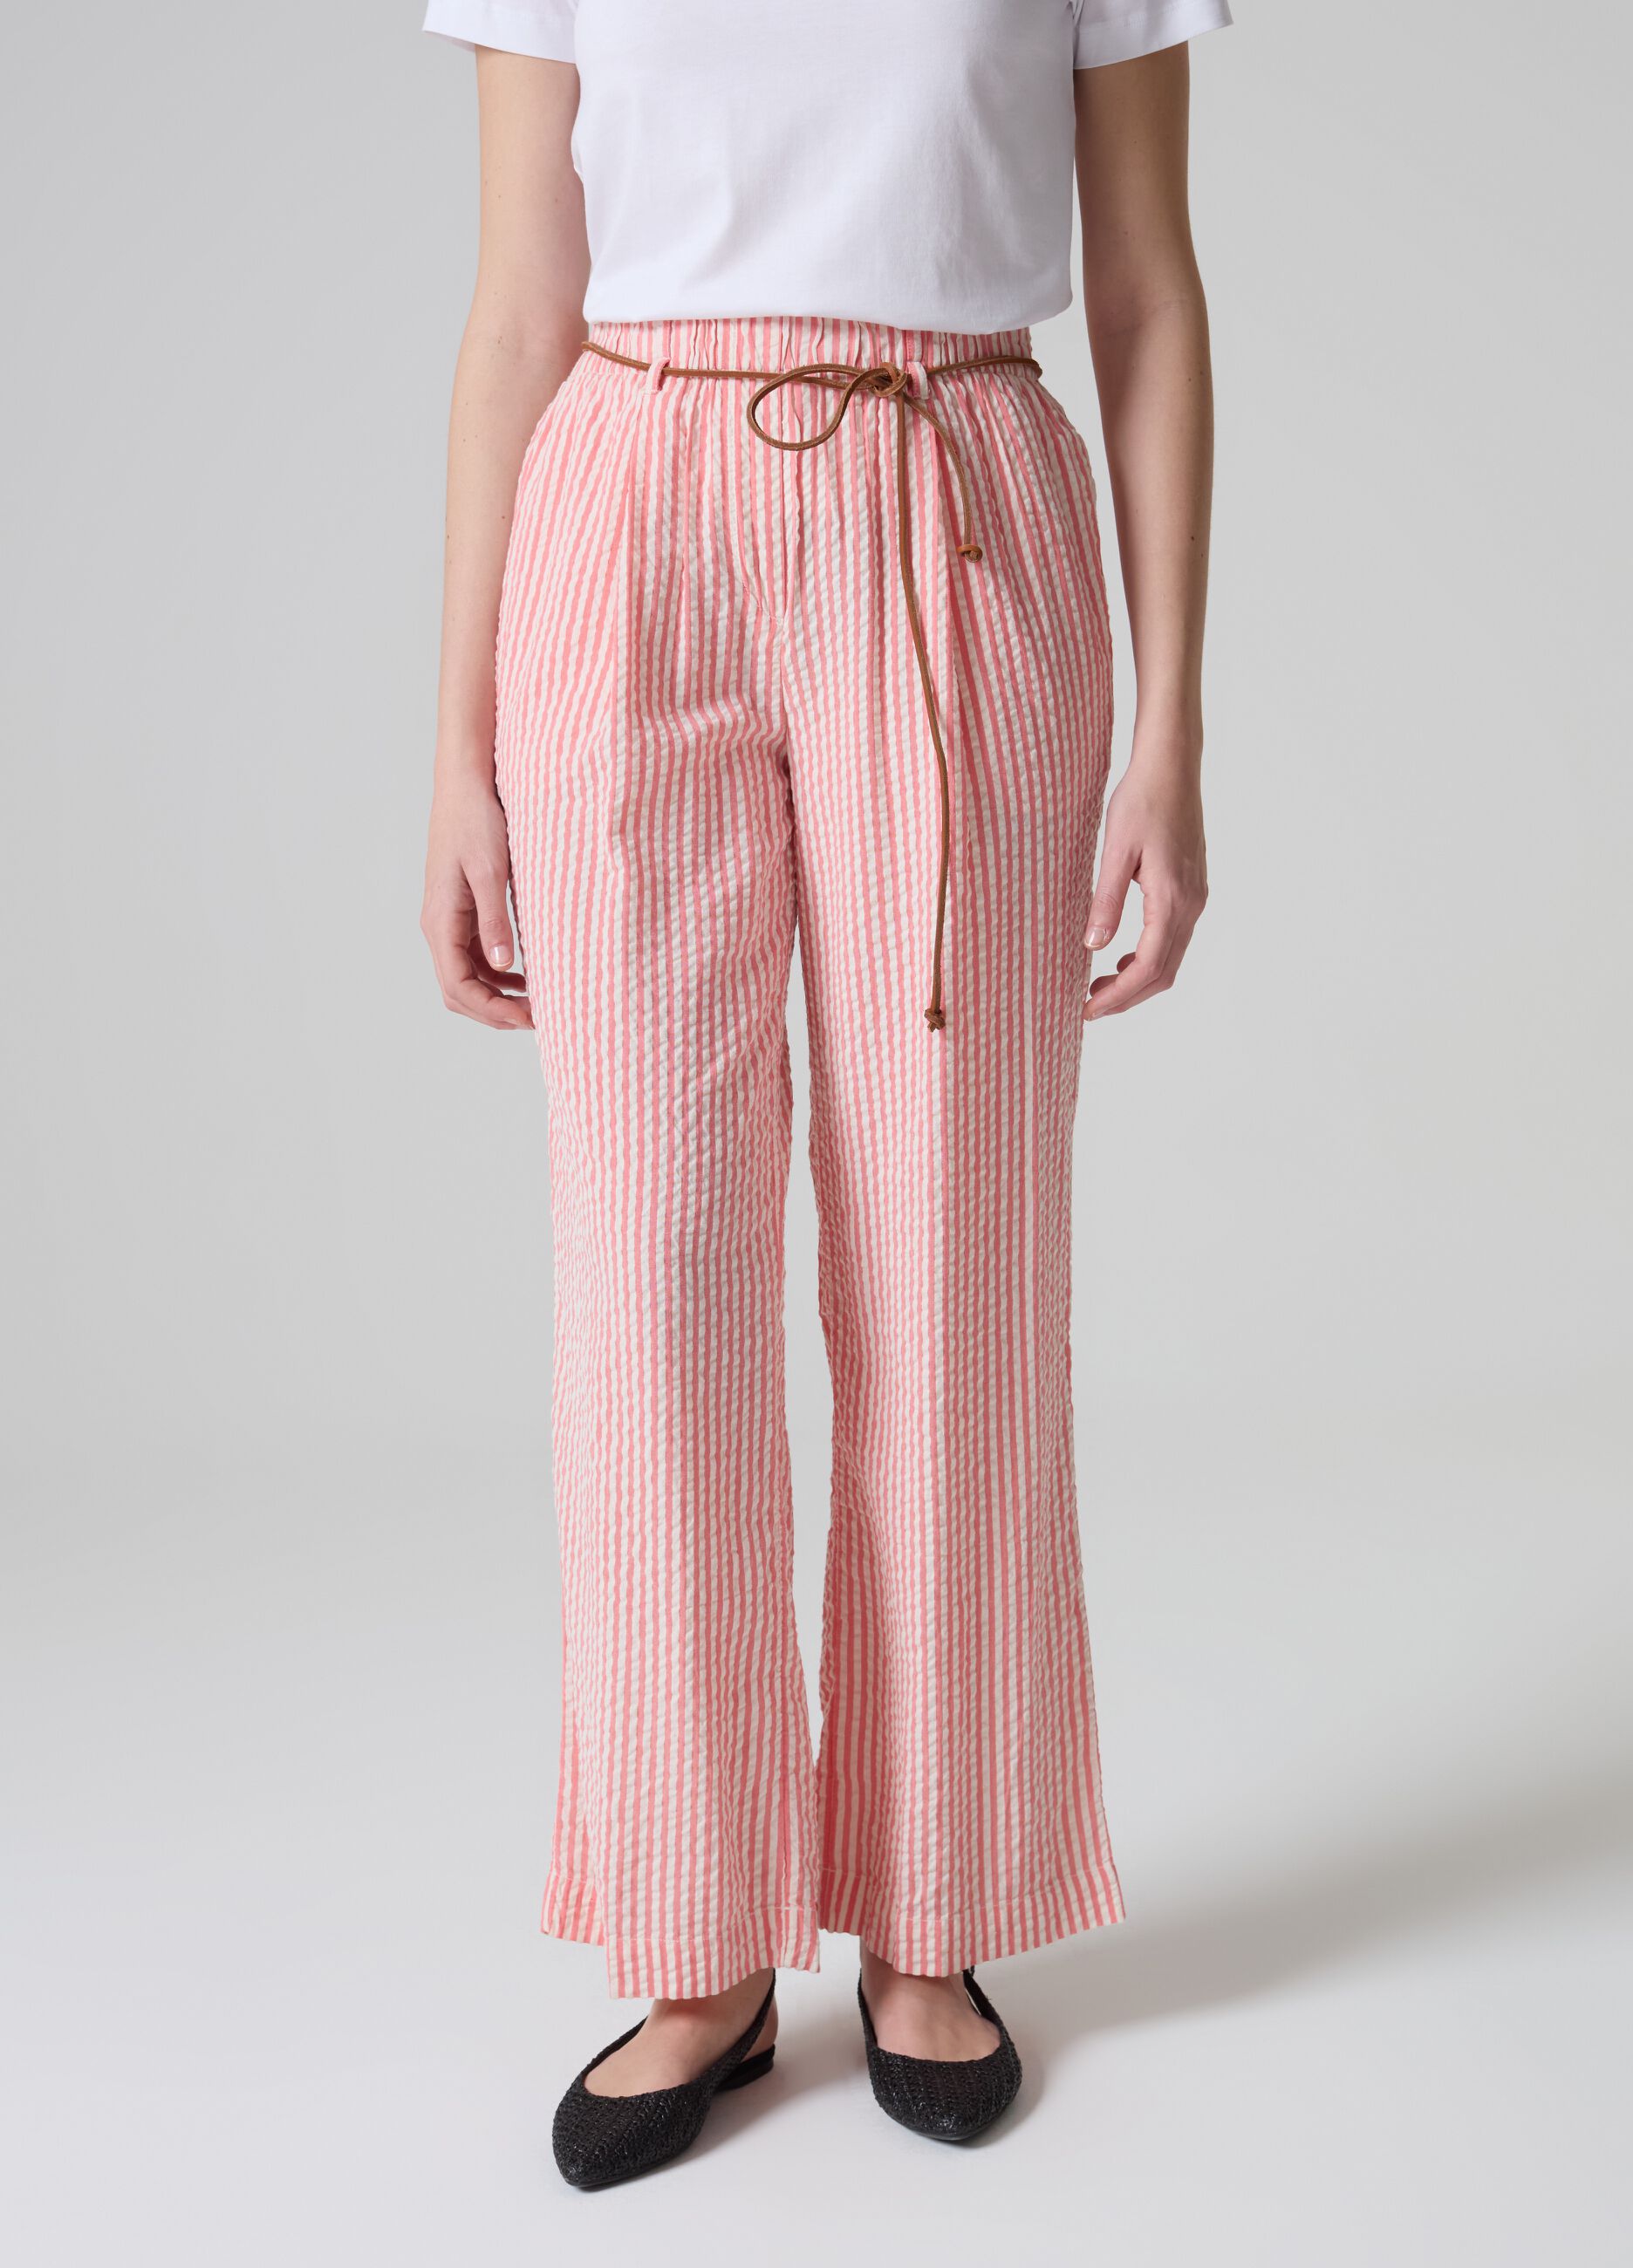 Striped seersucker trousers with belt